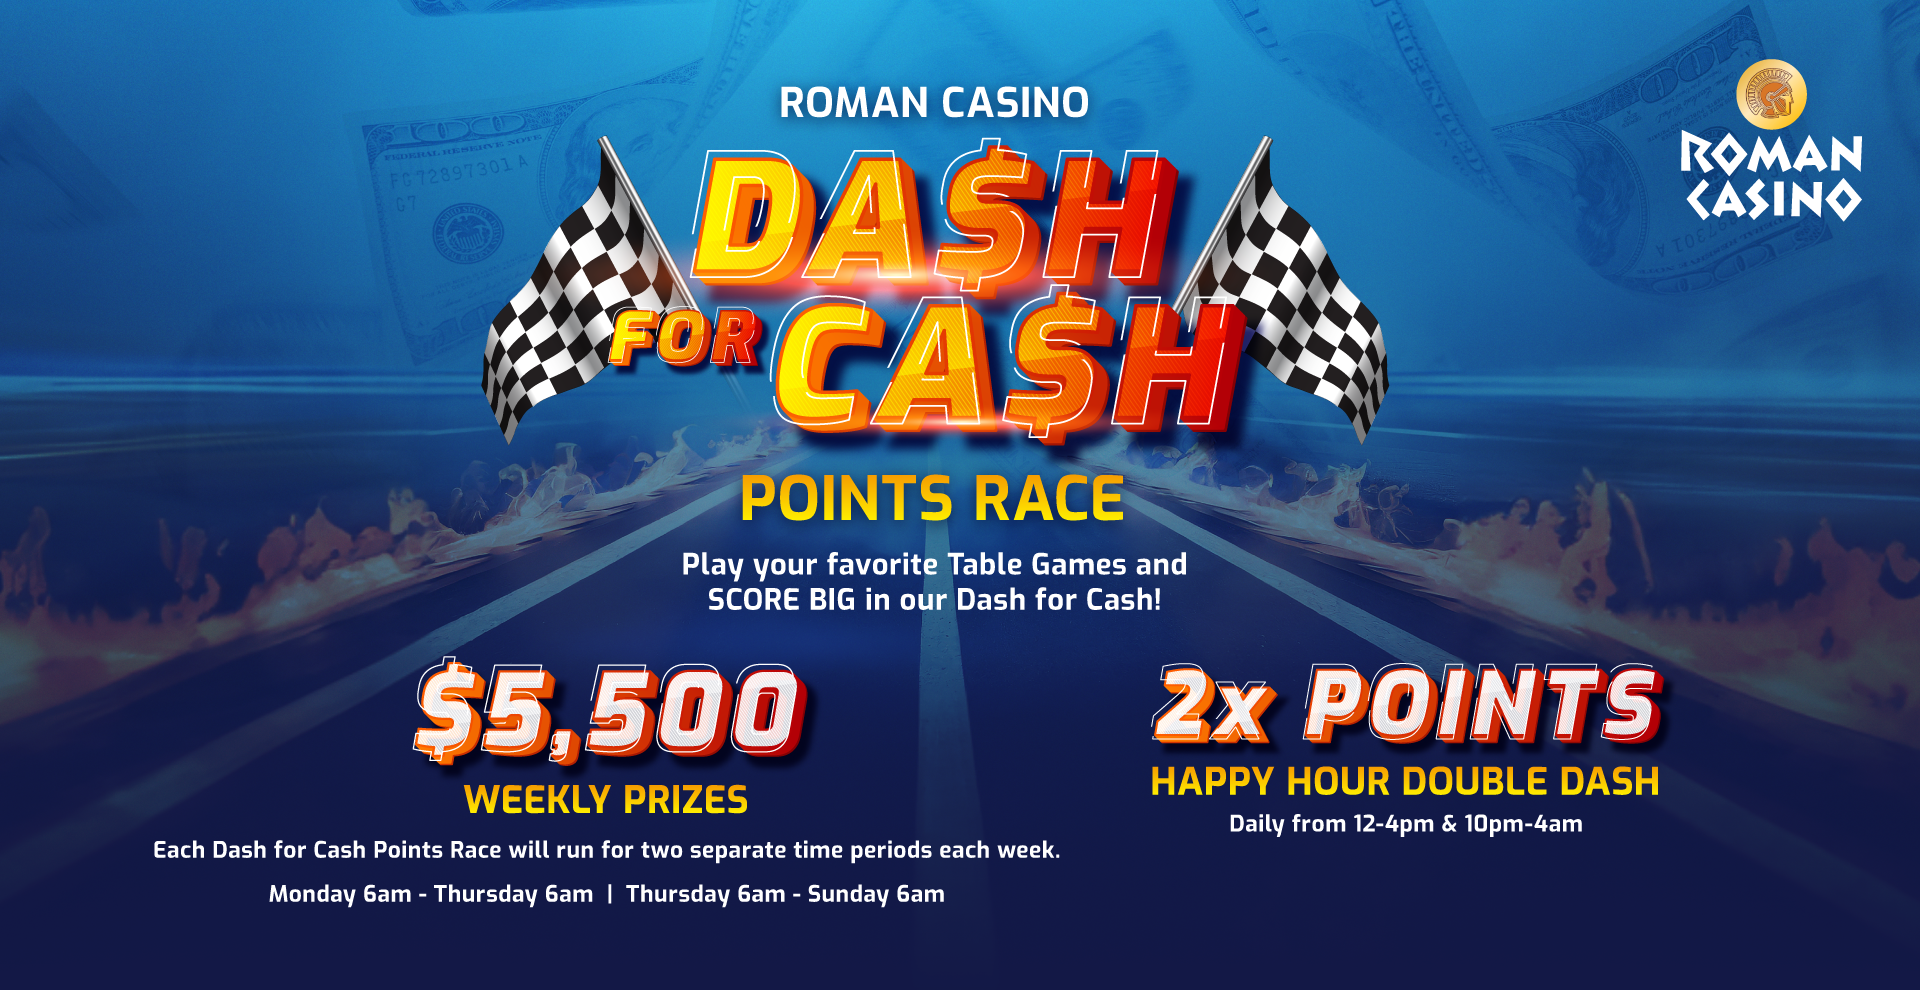 Roman Casino | Dash for Cash Points Race